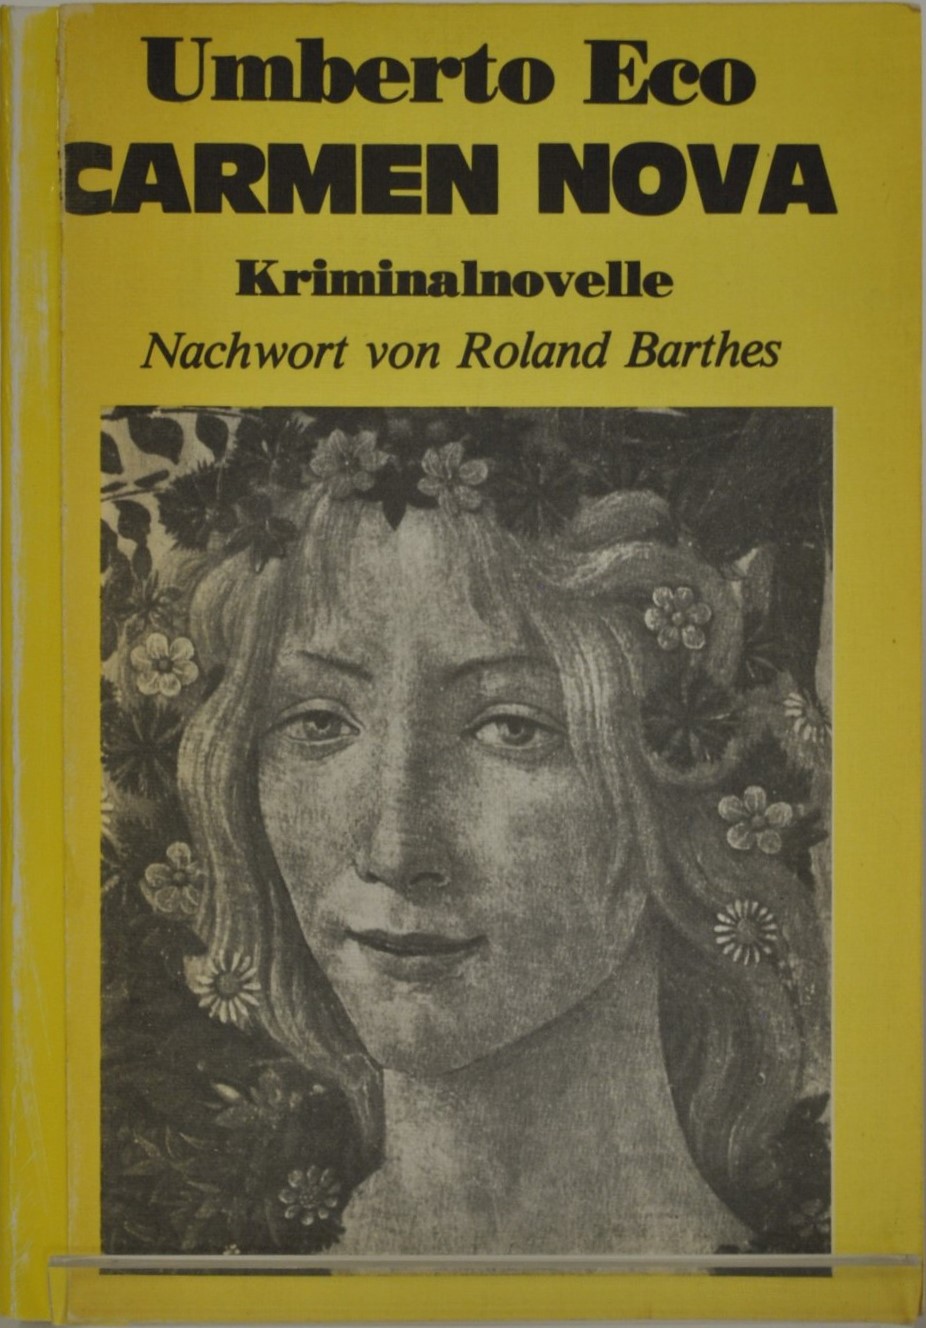 “Carmen Nova: kriminalnovelle” (1983): in vendita una copia del misterioso romanzo che Umberto Eco non avrebbe mai scritto?